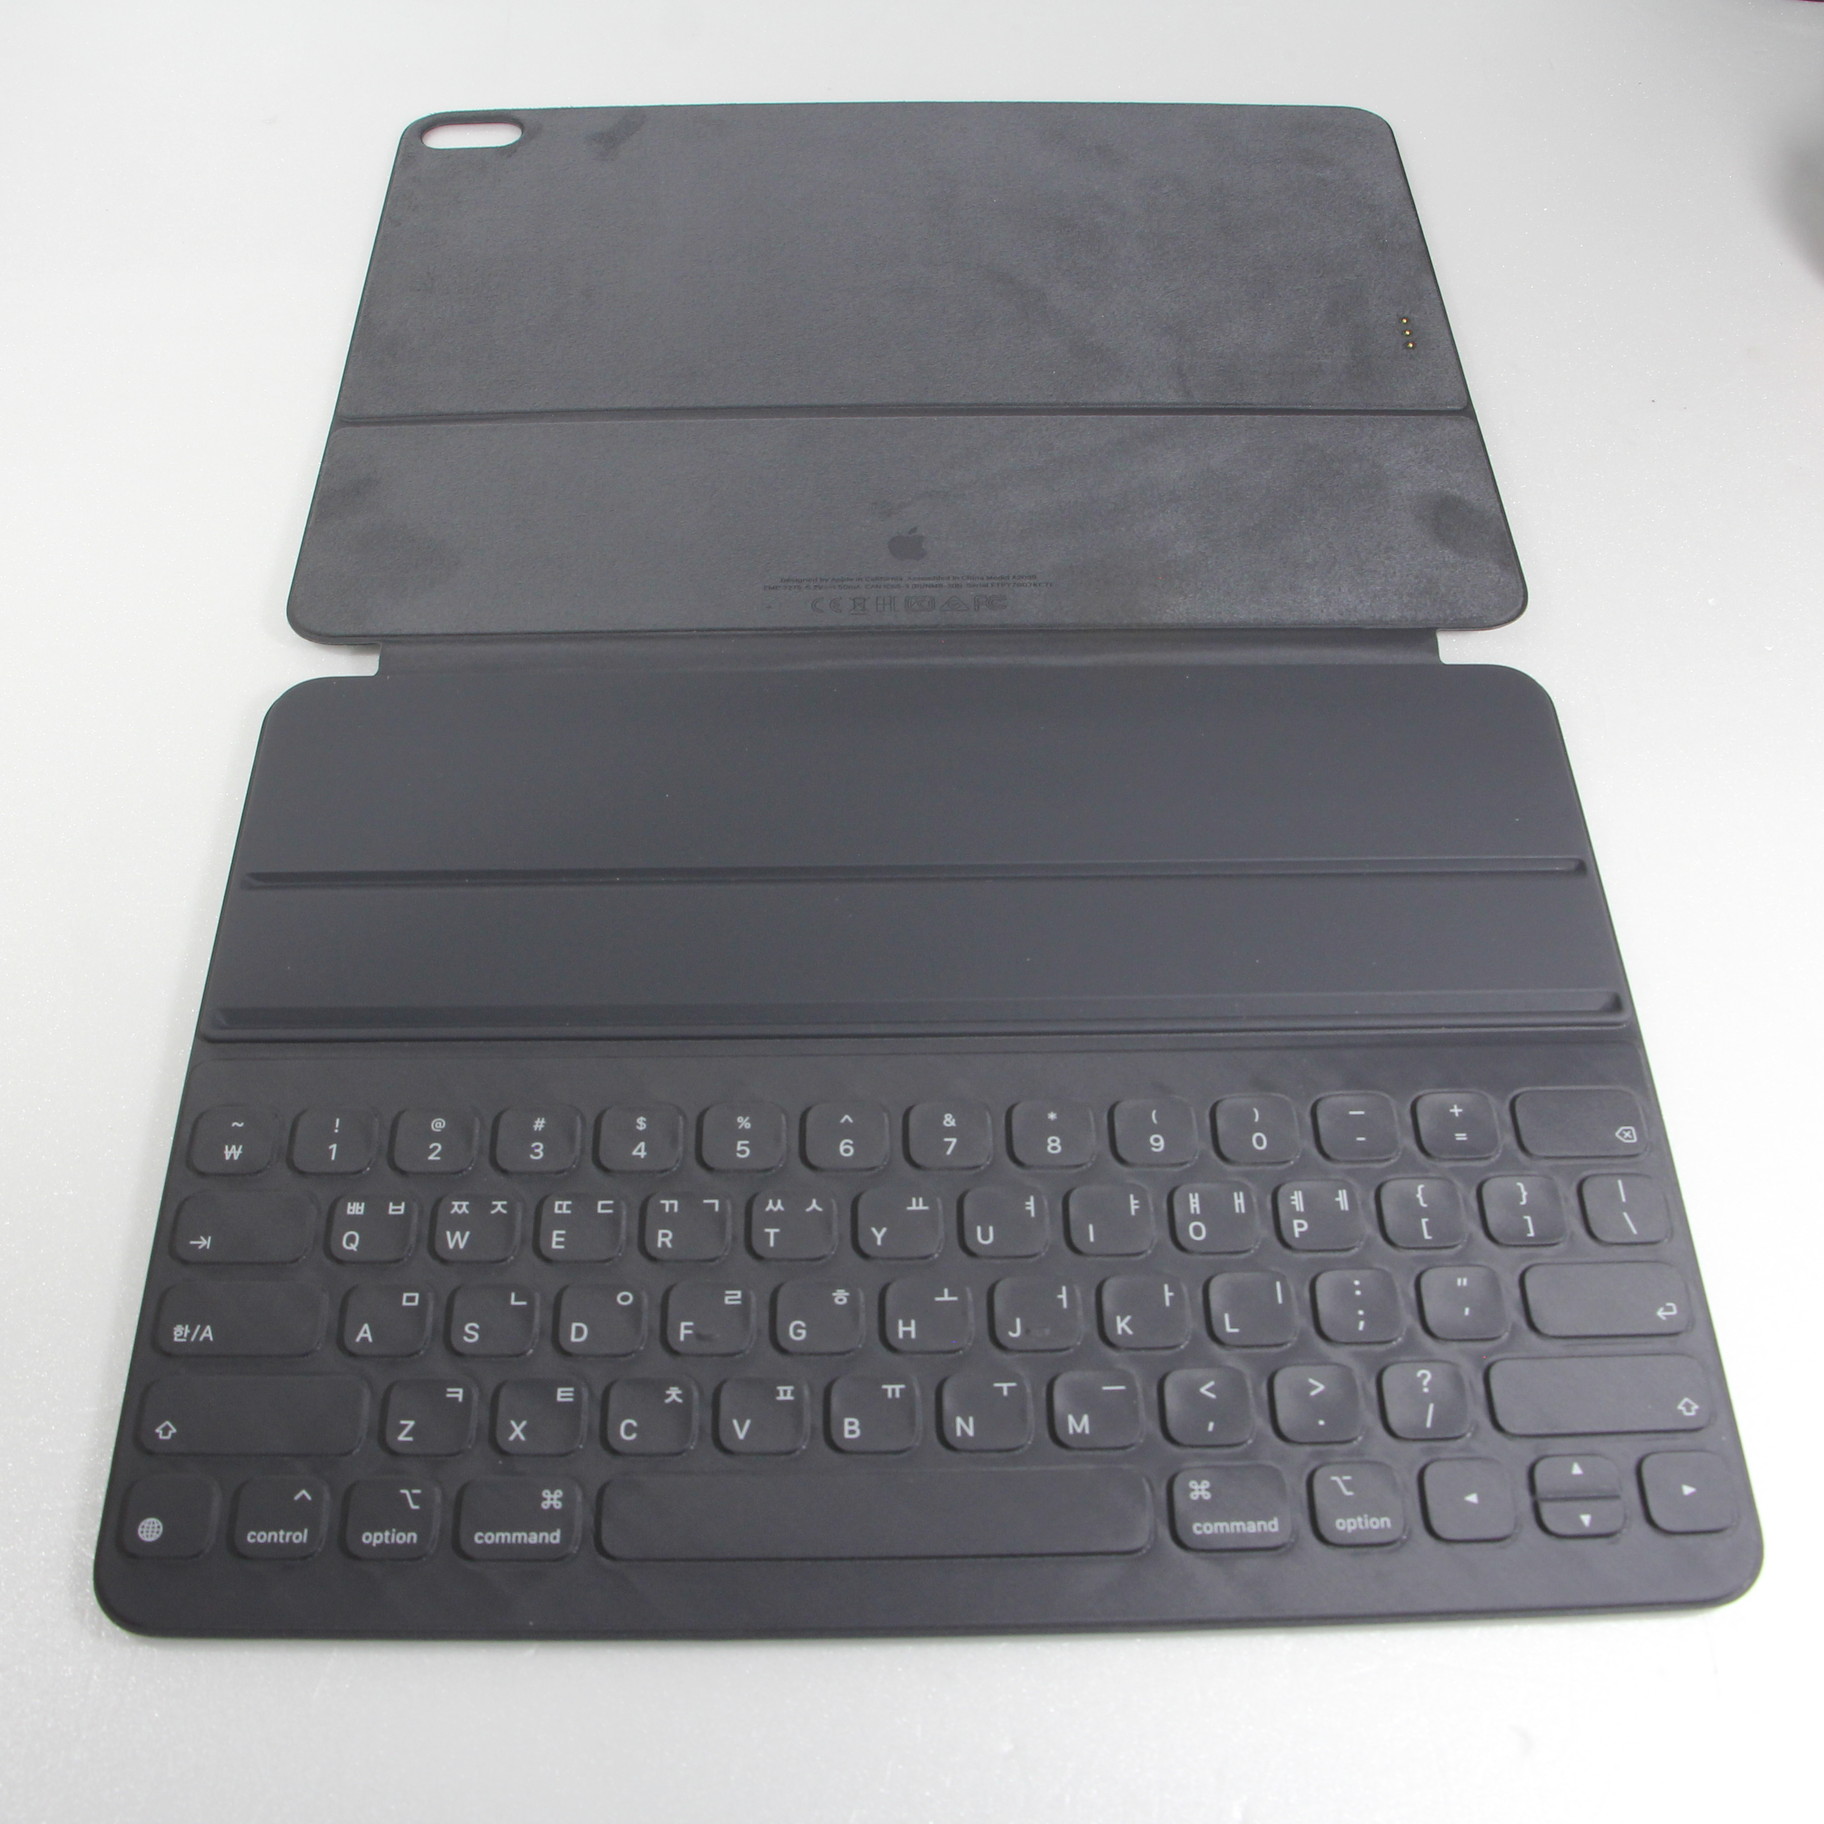 スマホ/家電/カメラiPad  Smart Keyboard Folio  新品　未開封